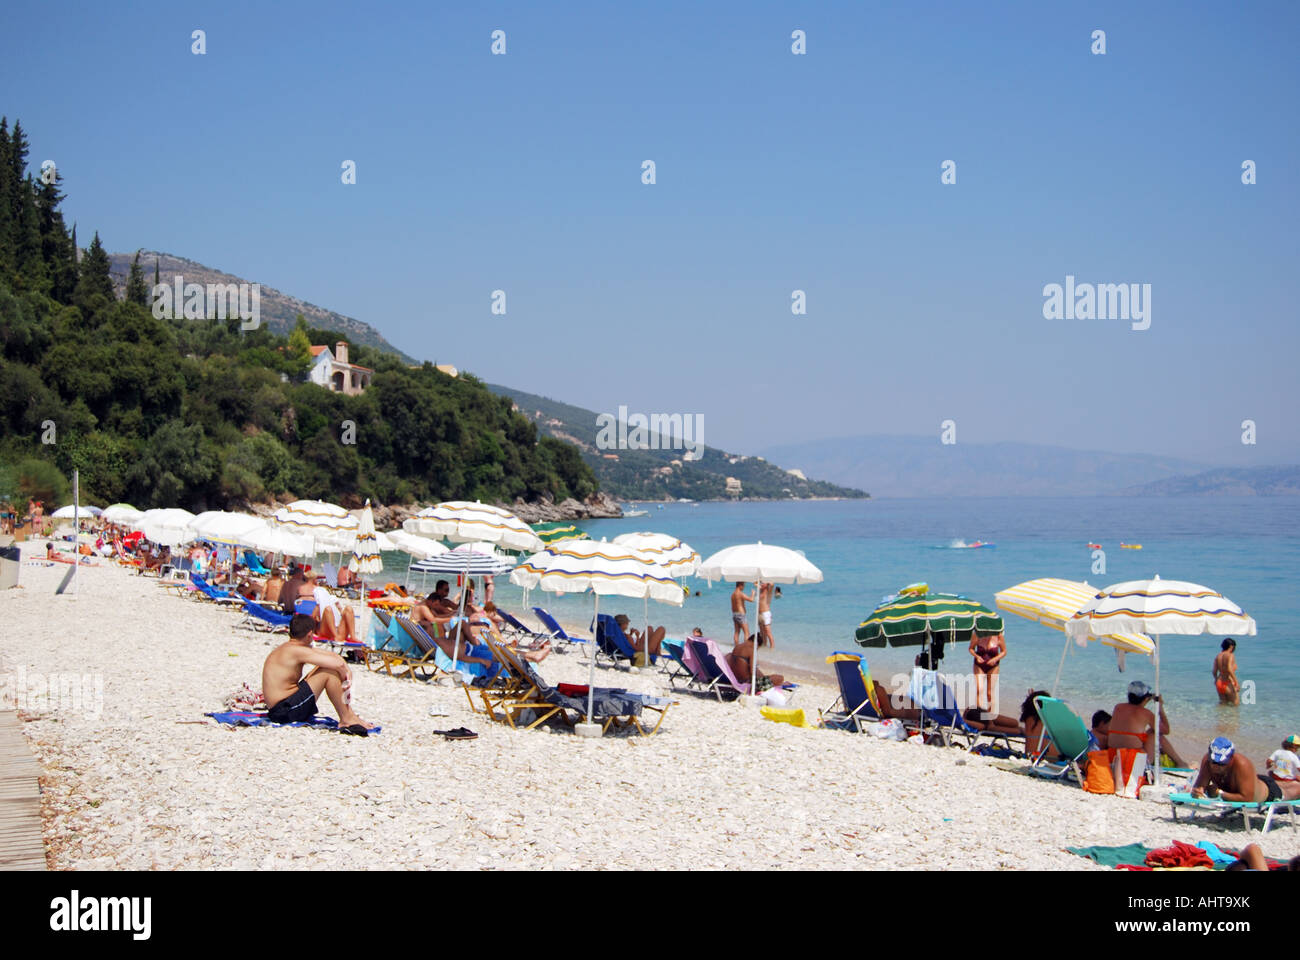 Barbati Beach, Barbati, Corfu, Ionian Islands, Greece Stock Photo